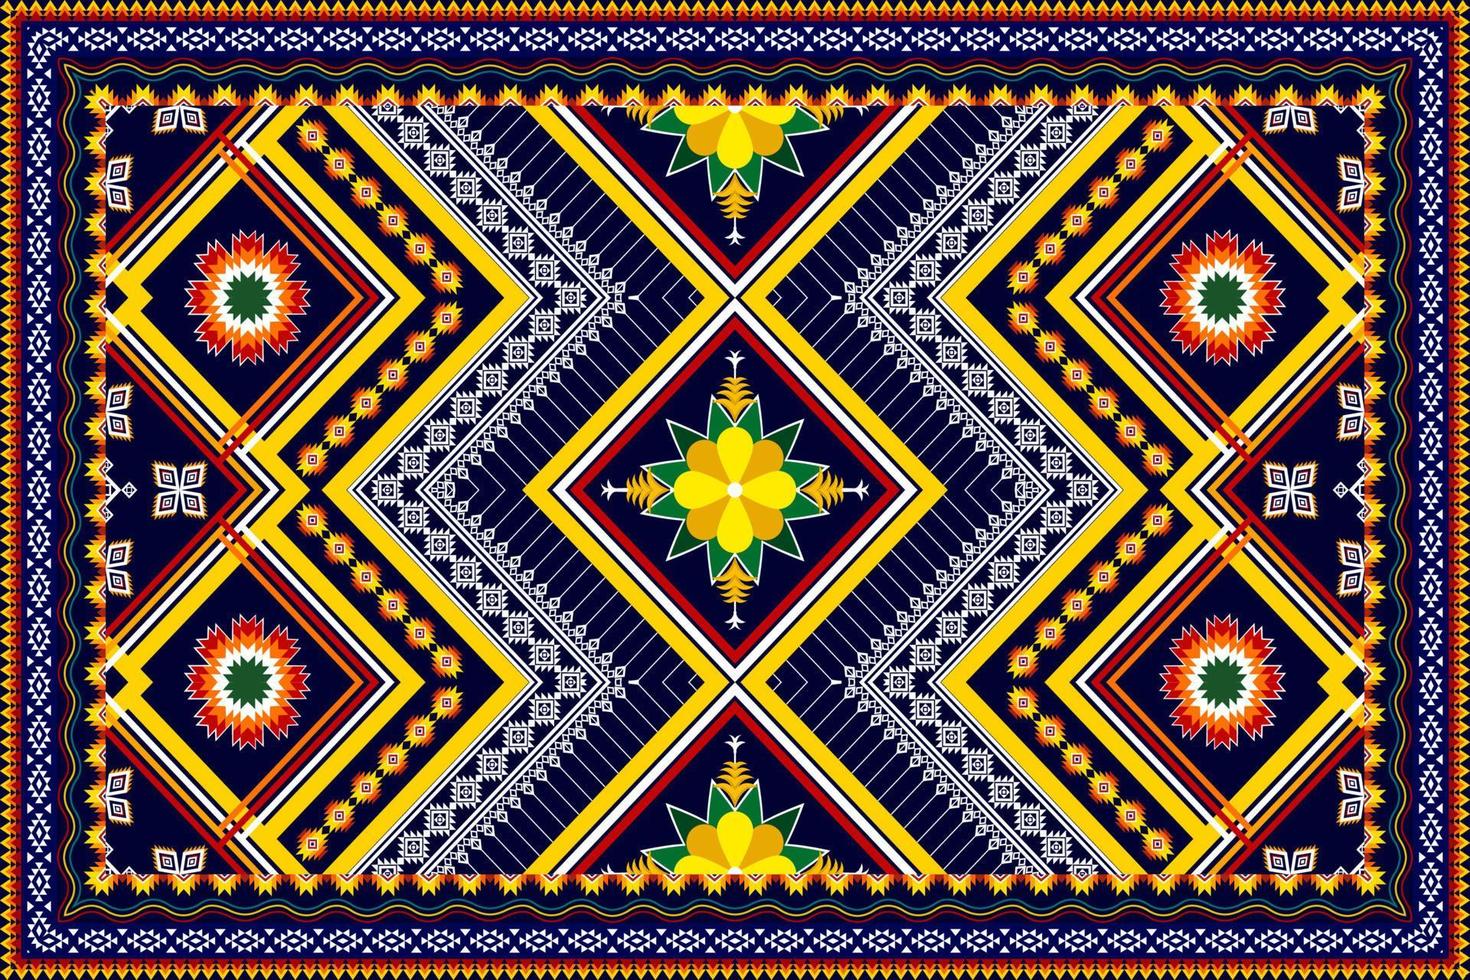 abstract geometrisch etnisch patroonontwerp. Azteekse stof tapijt mandala ornament etnische chevron textiel decoratie behang. tribal boho inheemse etnische traditionele borduurwerk vector achtergrond